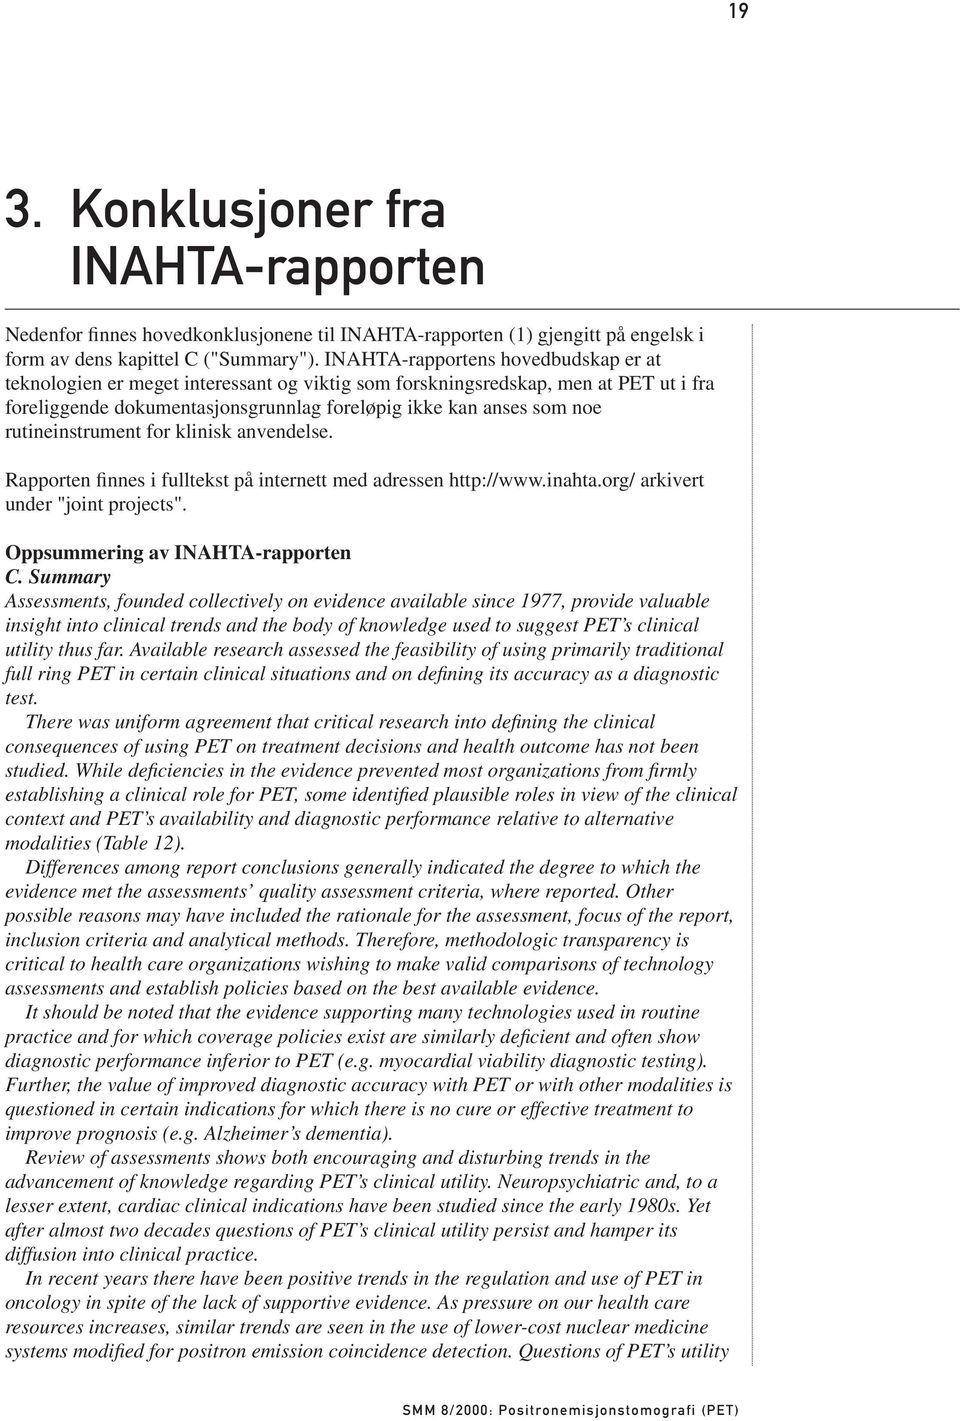 rutineinstrument for klinisk anvendelse. Rapporten finnes i fulltekst på internett med adressen http://www.inahta.org/ arkivert under "joint projects". Oppsummering av INAHTA-rapporten C.